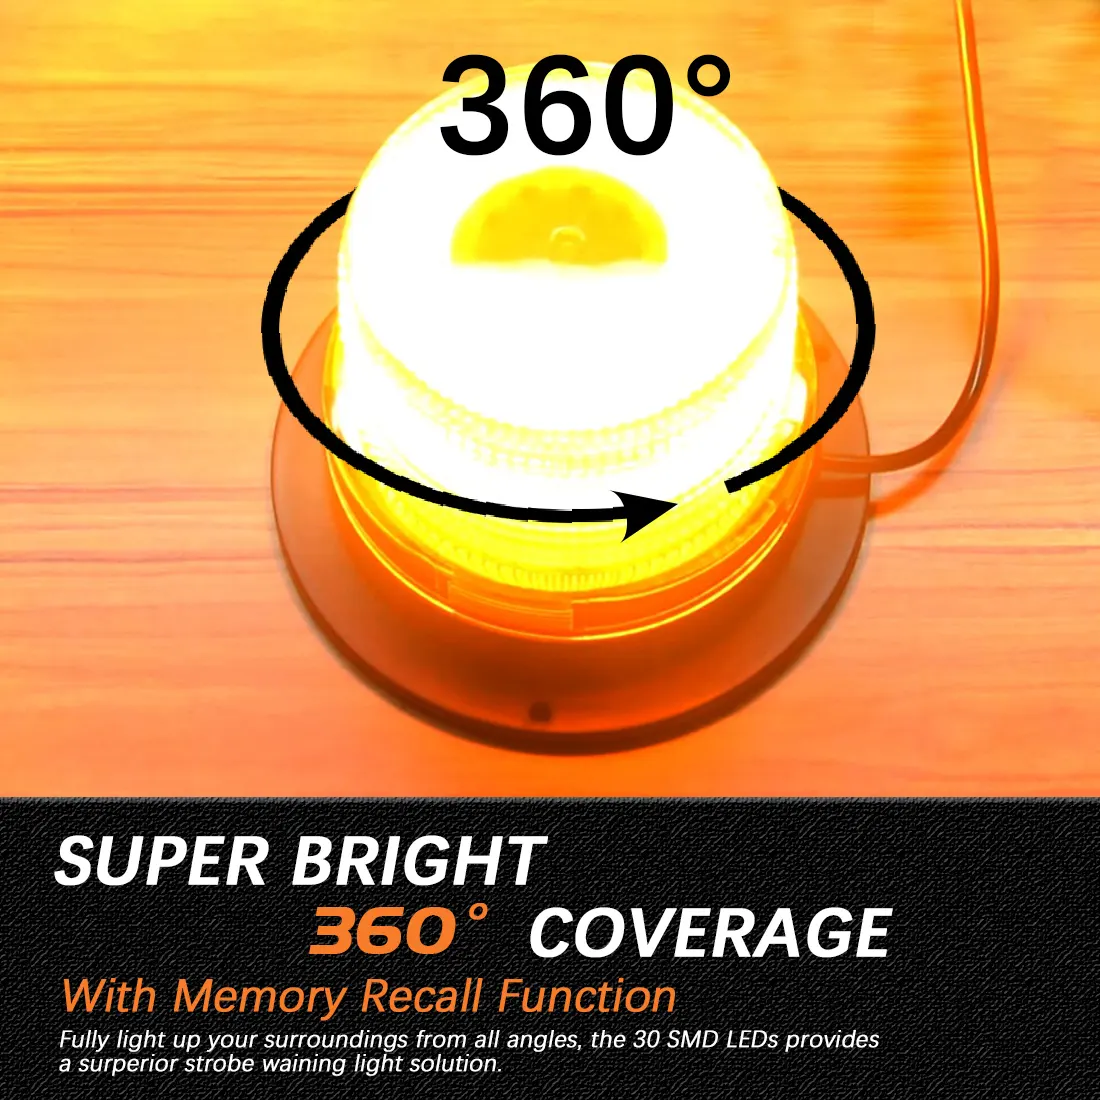 9-32V E-mark Flashing Magnetic Beacon Light LED Amber Warning LED Strobe Light